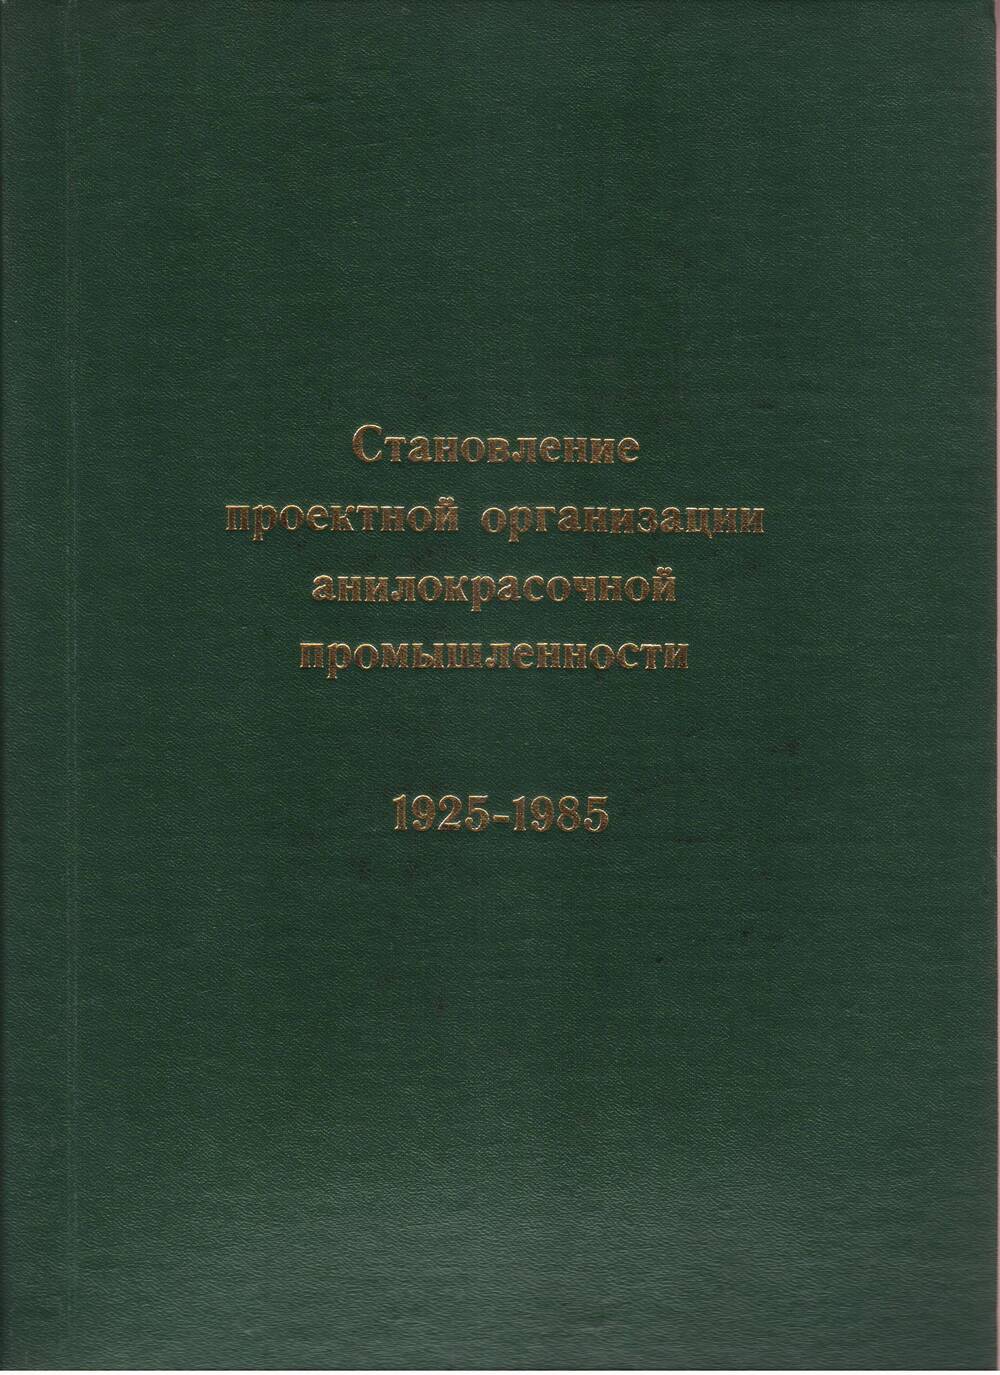 Книга. Становление проектной организации анилокрасочной промышленности 1925-1985 